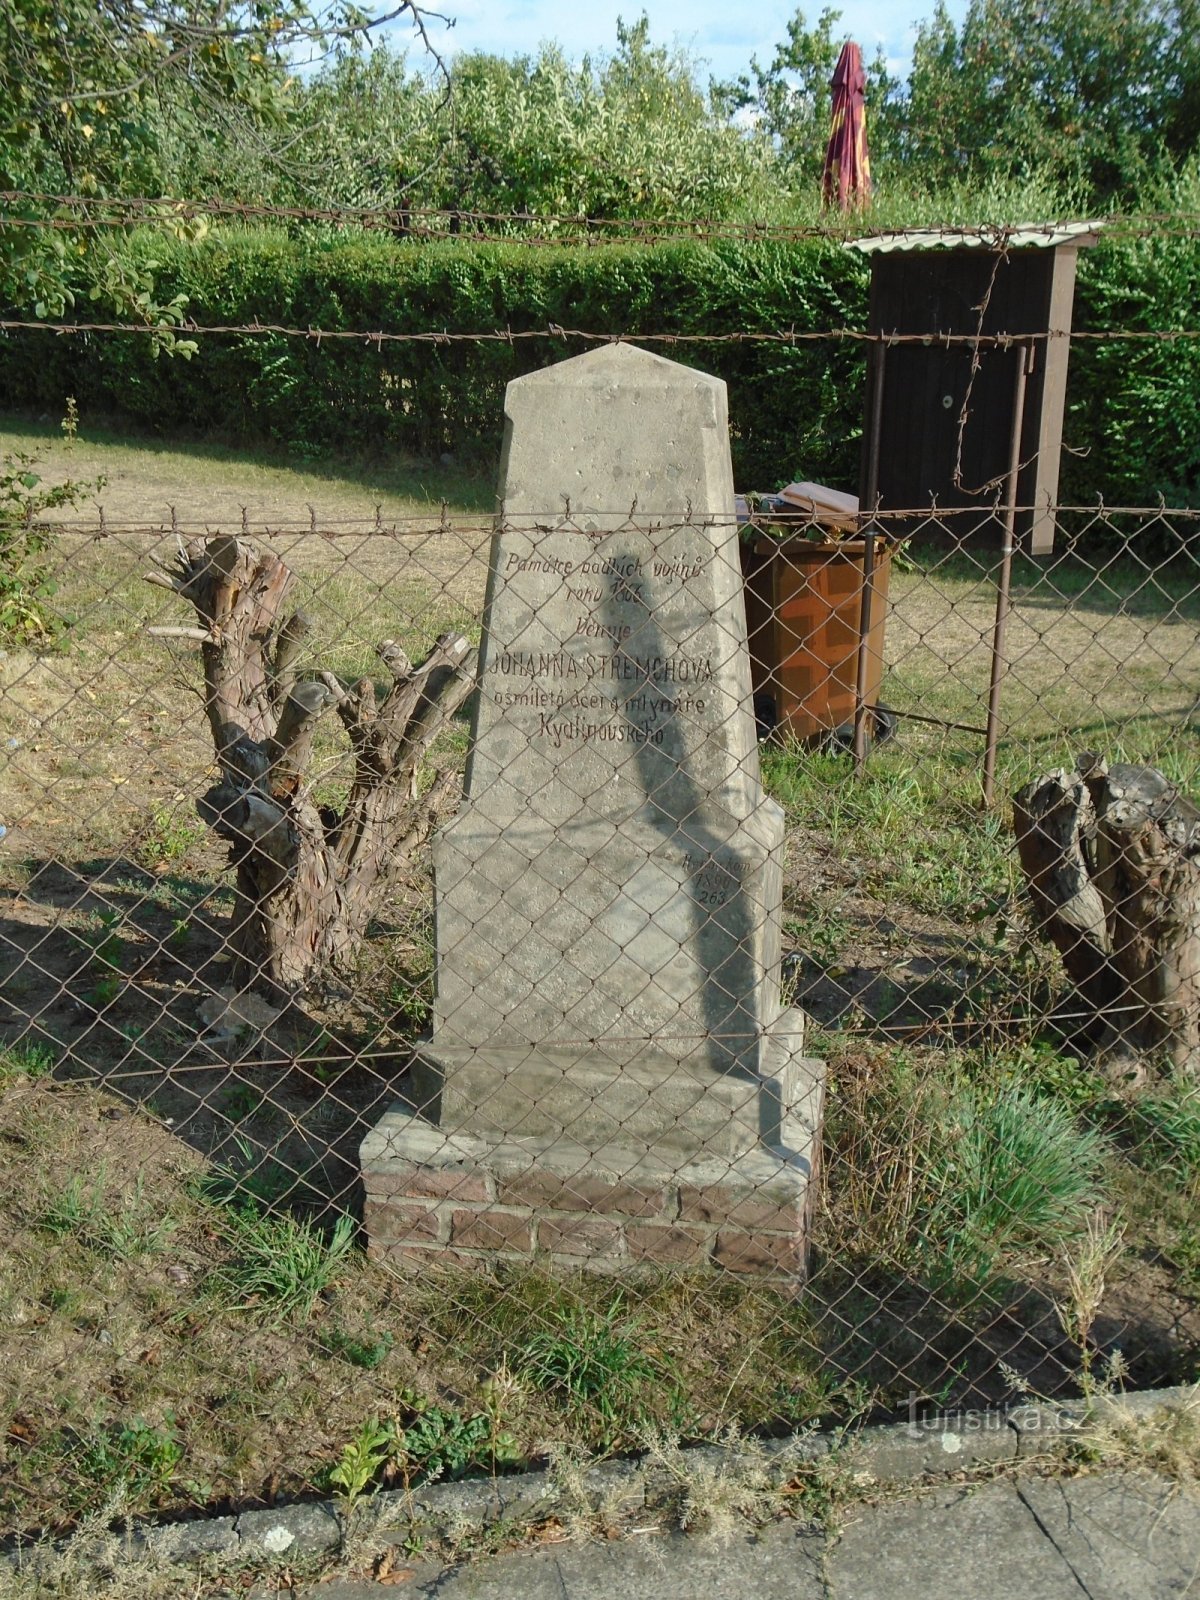 Đài tưởng niệm những người lính đã ngã xuống trong Chiến tranh Phổ-Áo năm 1866 ở Plácky (Hradec Králové)